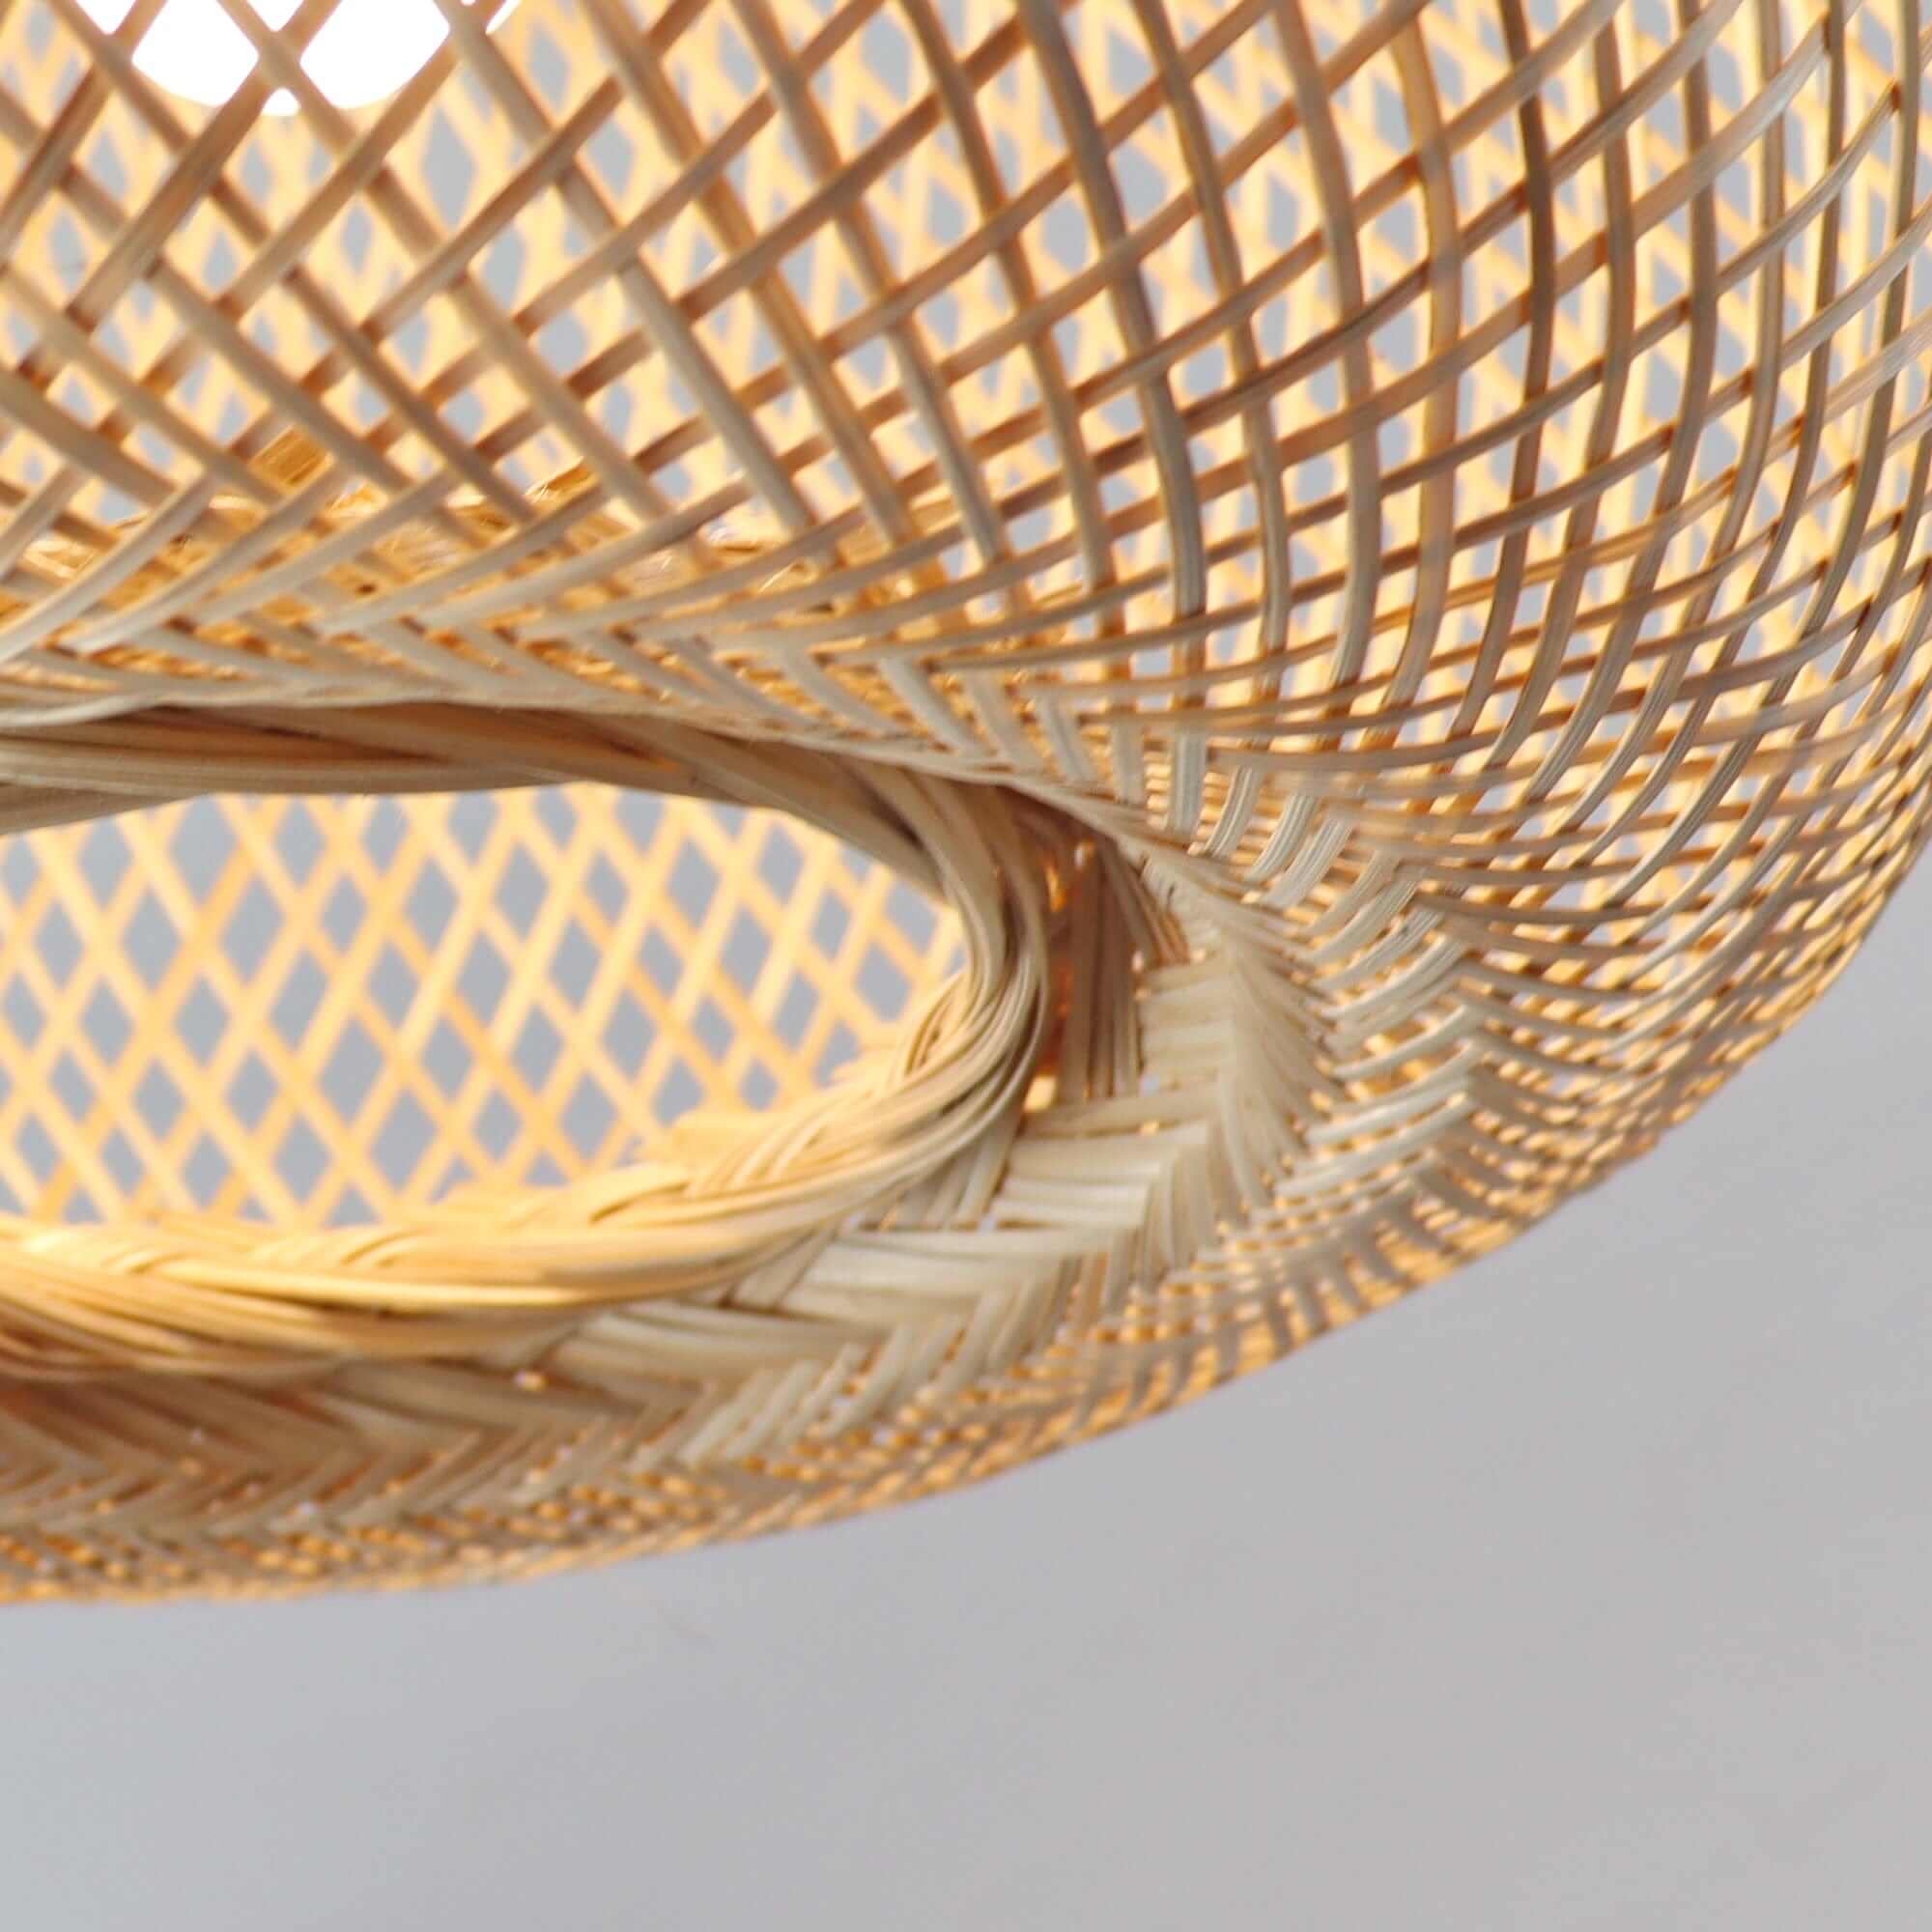 KUN YA NA - Bamboo Pendant Light (33 cm)